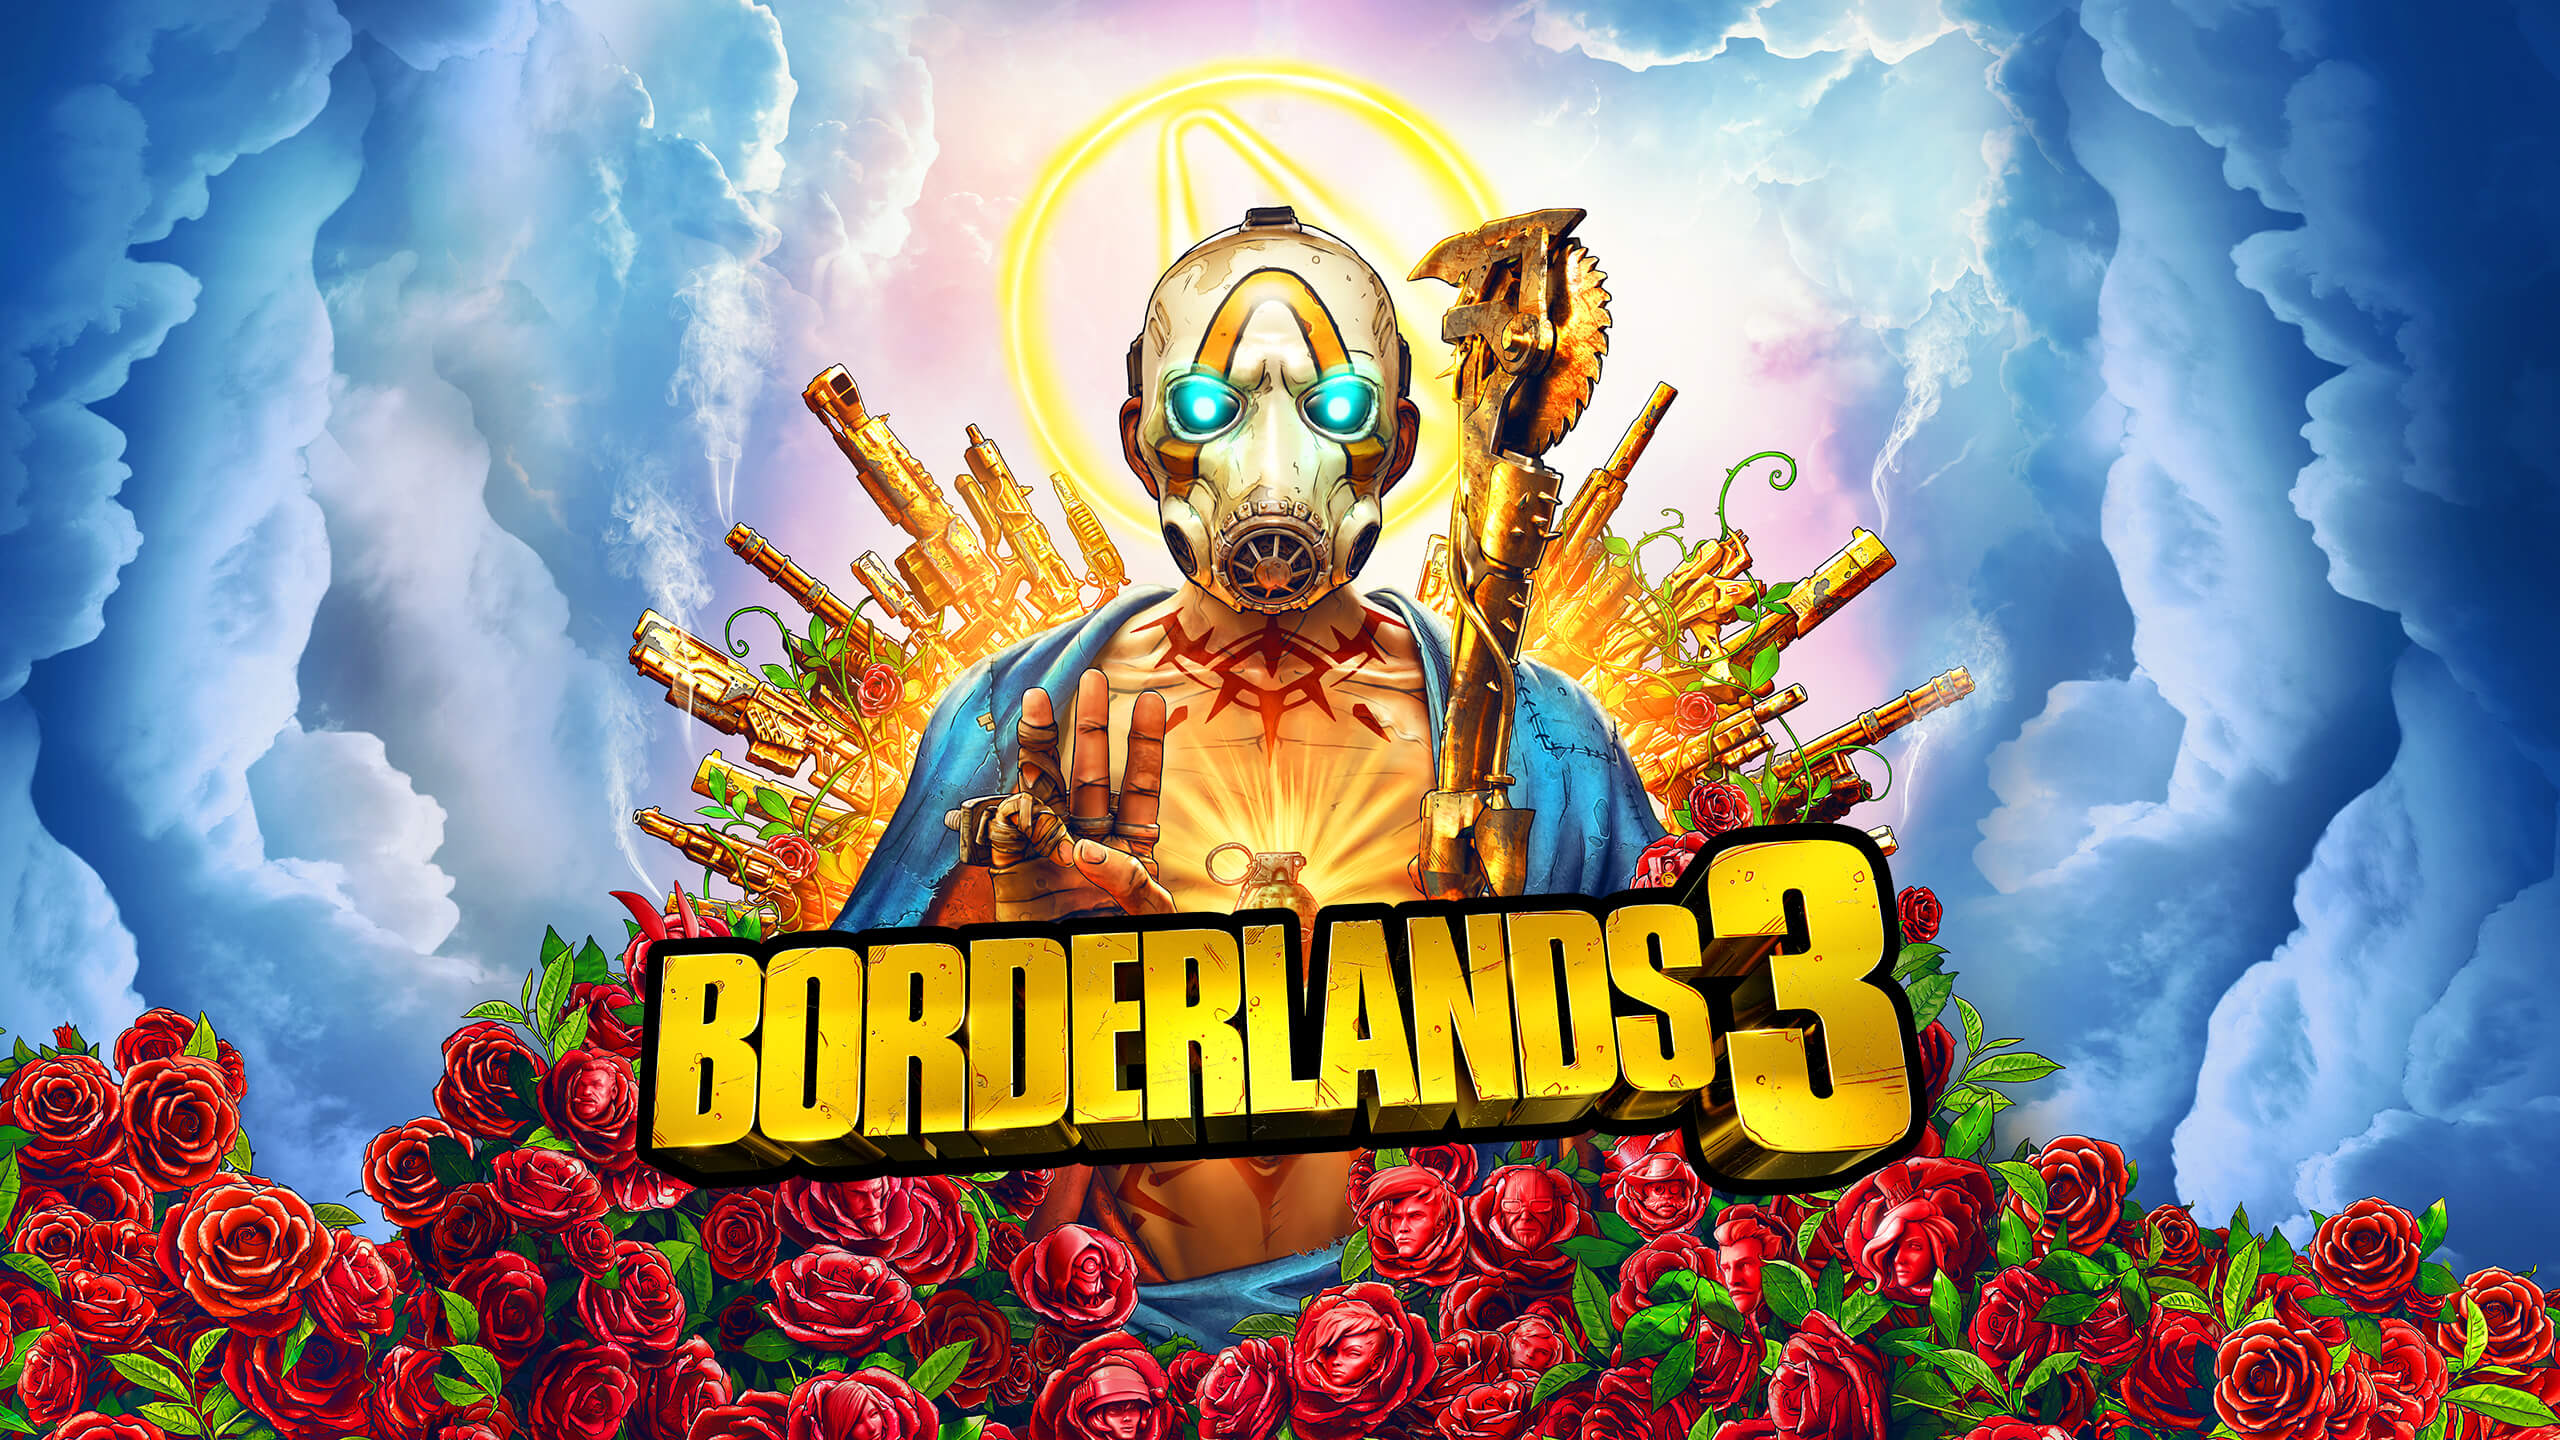 Borderlands 3 플레이어는 팬 아트를 공유하지 않았습니다.